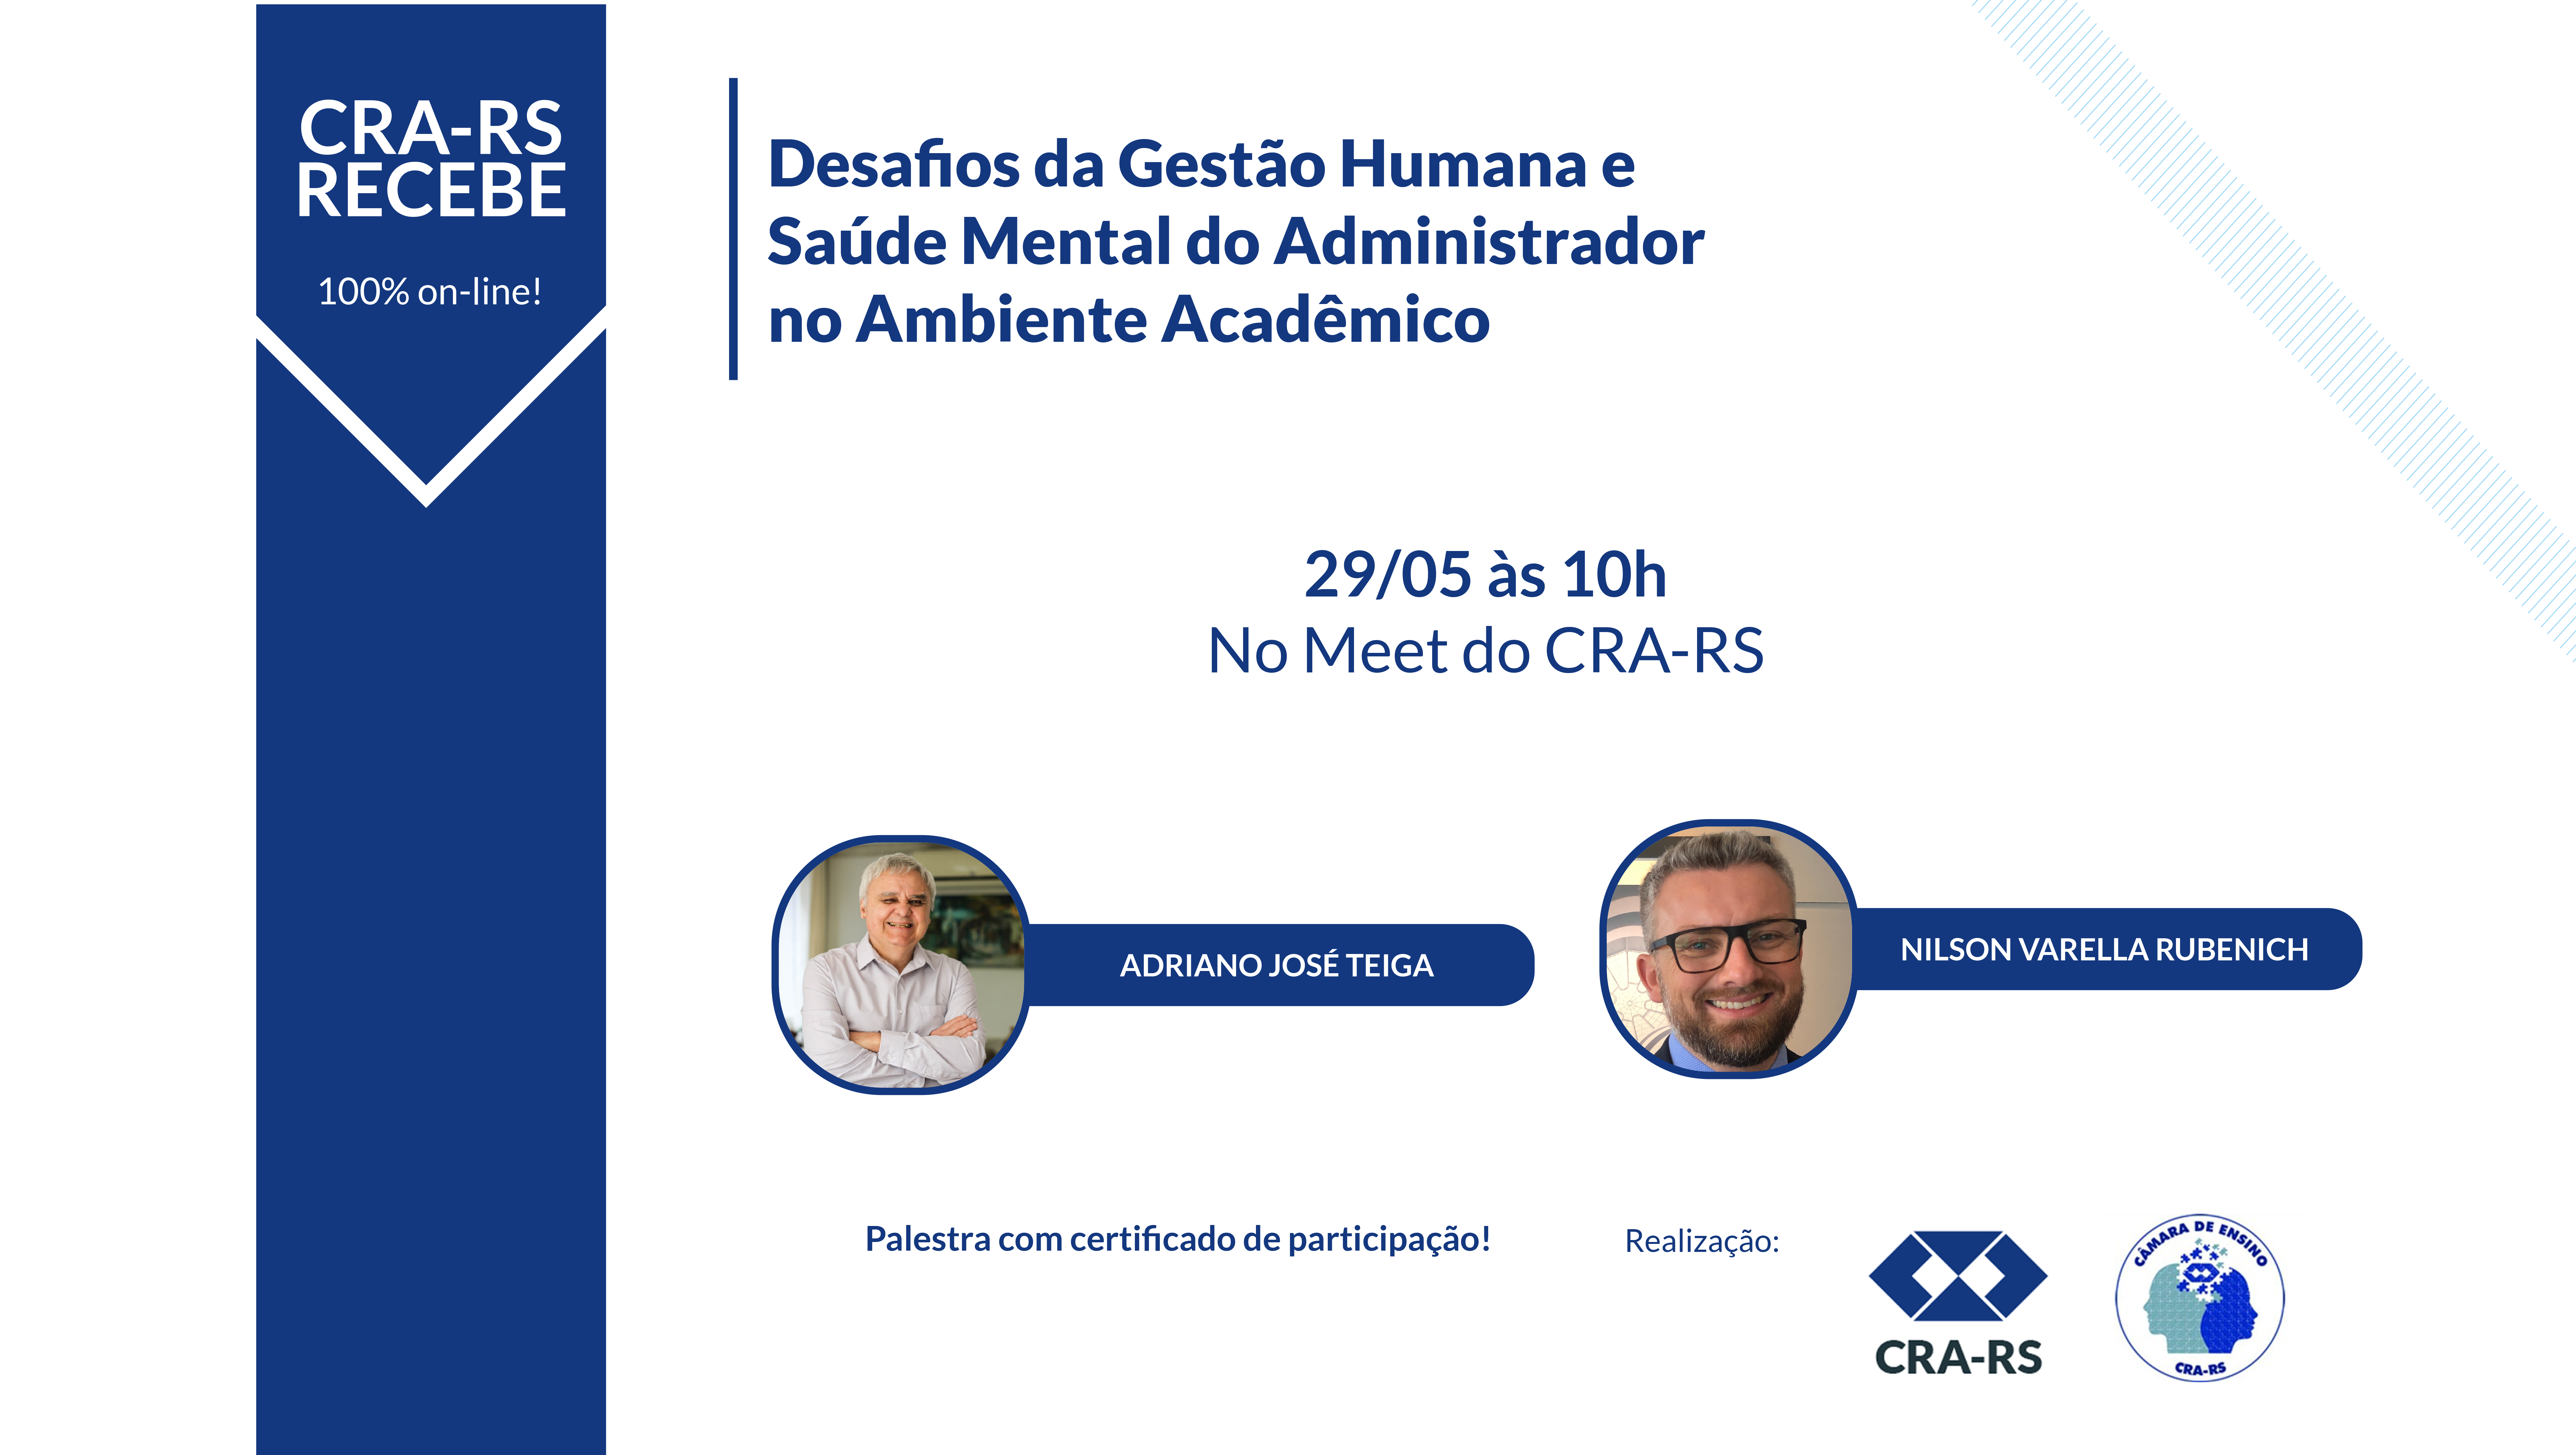 CRA-RS Recebe aborda os desafios da gestão humana e a saúde mental do Administrador no ambiente acadêmico